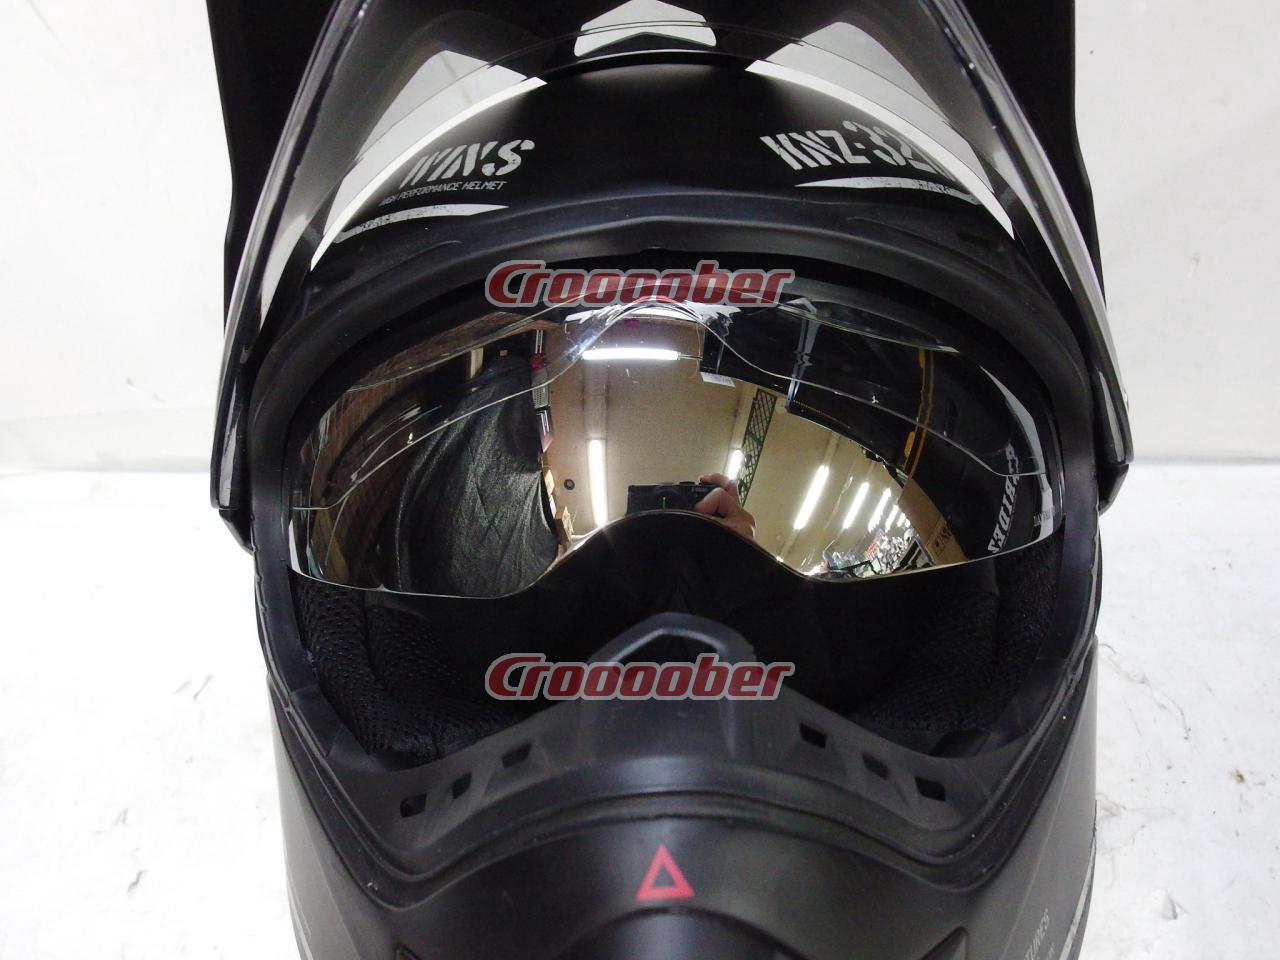 WINS X-ROAD COMBAT オフロードヘルメット マットブラック Mサイズ 